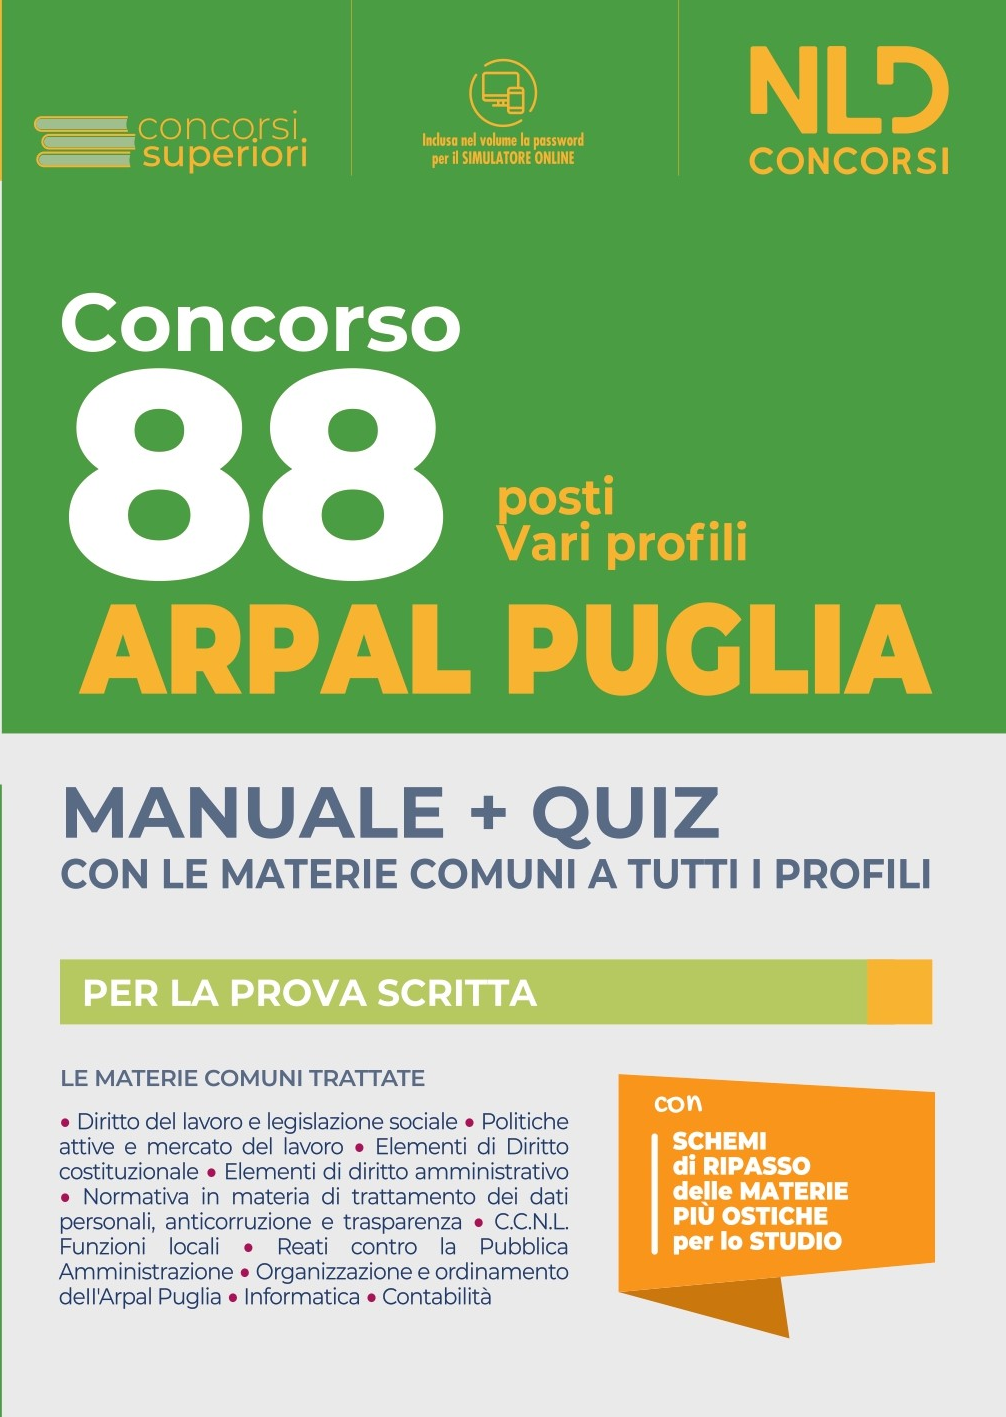 Concorso 88 ARPAL PUGLIA: Manuale + Quiz per 88 Posti Vari Profili